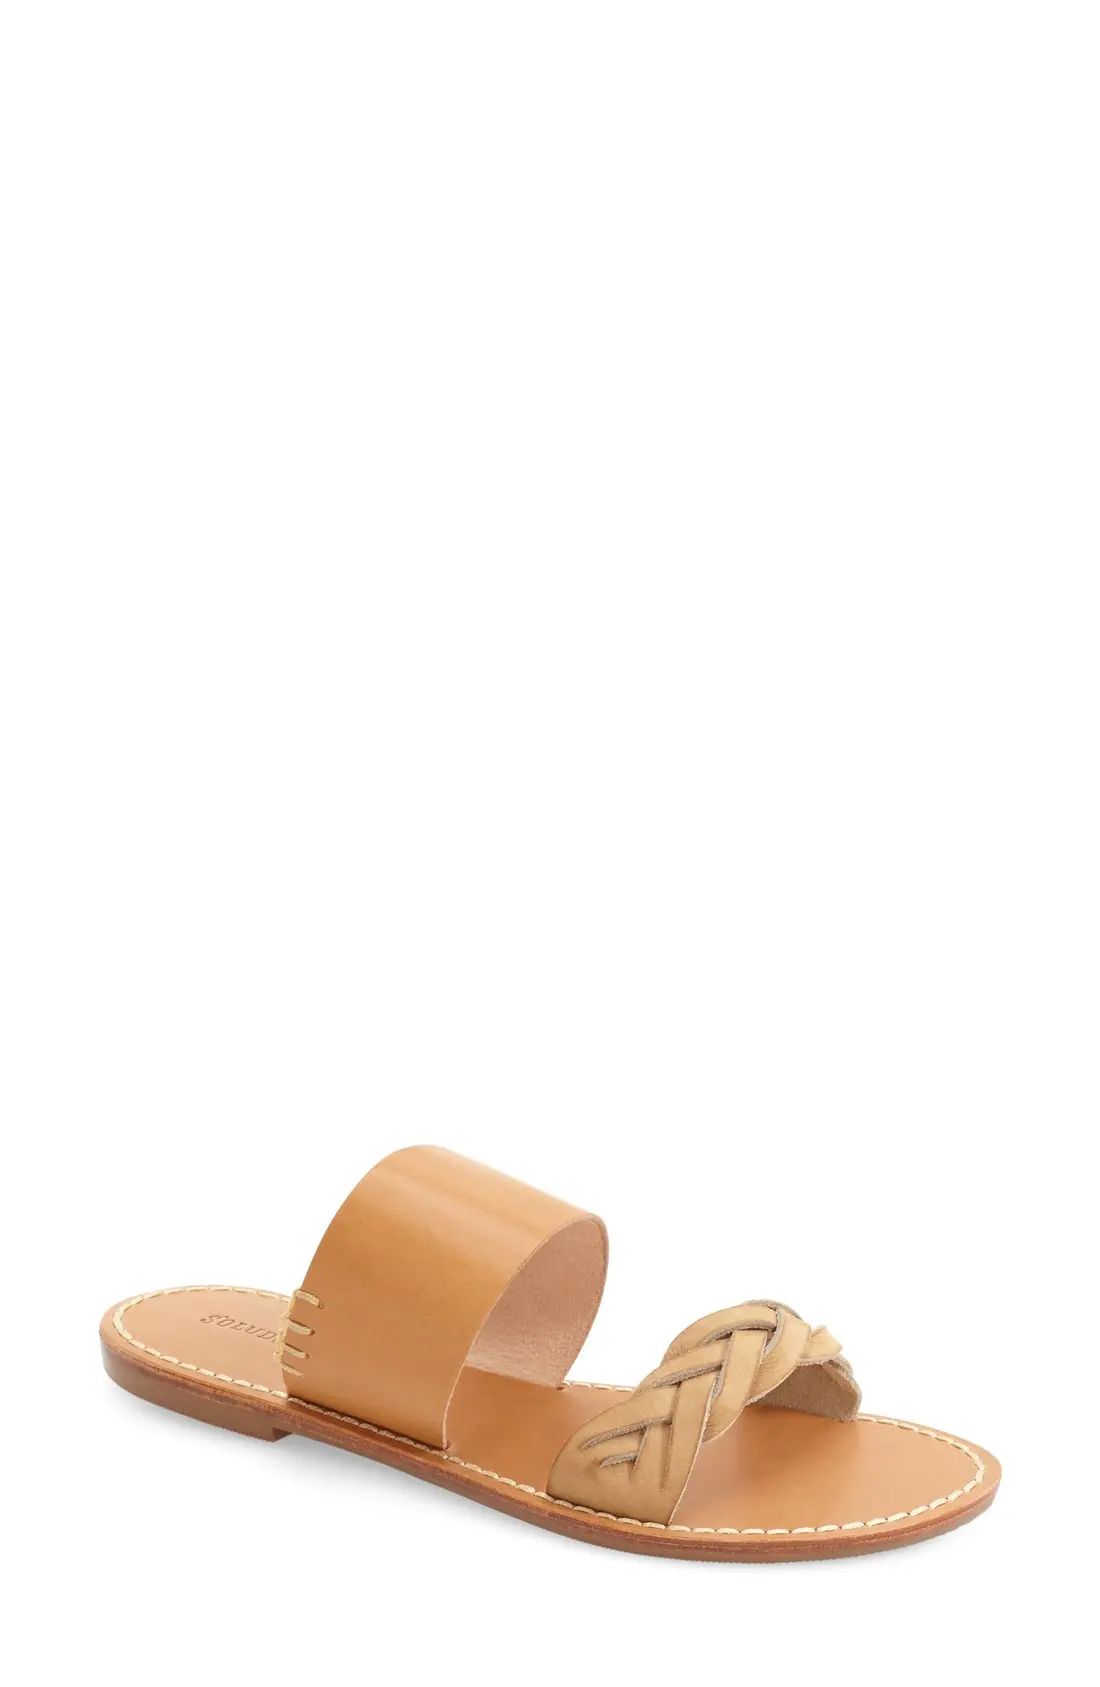 Soludos Slide Sandal in Acorn/Brown Leather at Nordstrom, Size 10 | Nordstrom